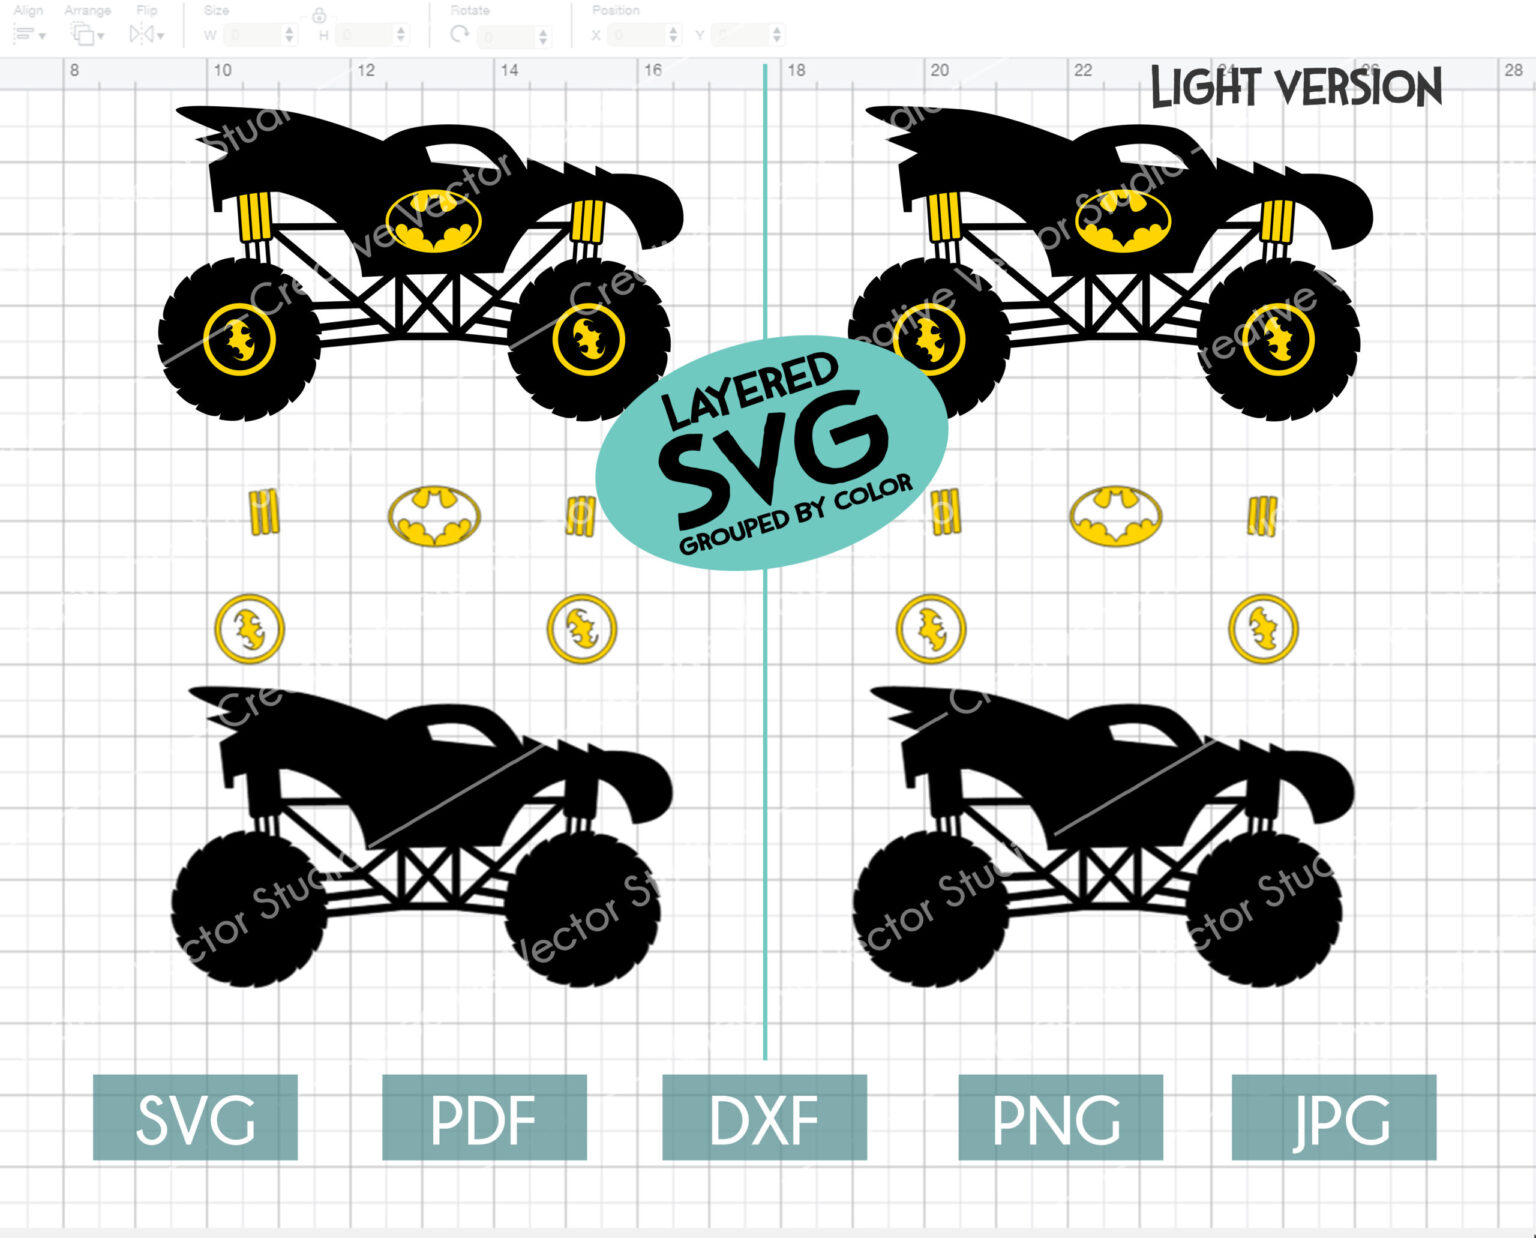 Download Monster Truck SVG Bundle #4 | Creative Vector Studio